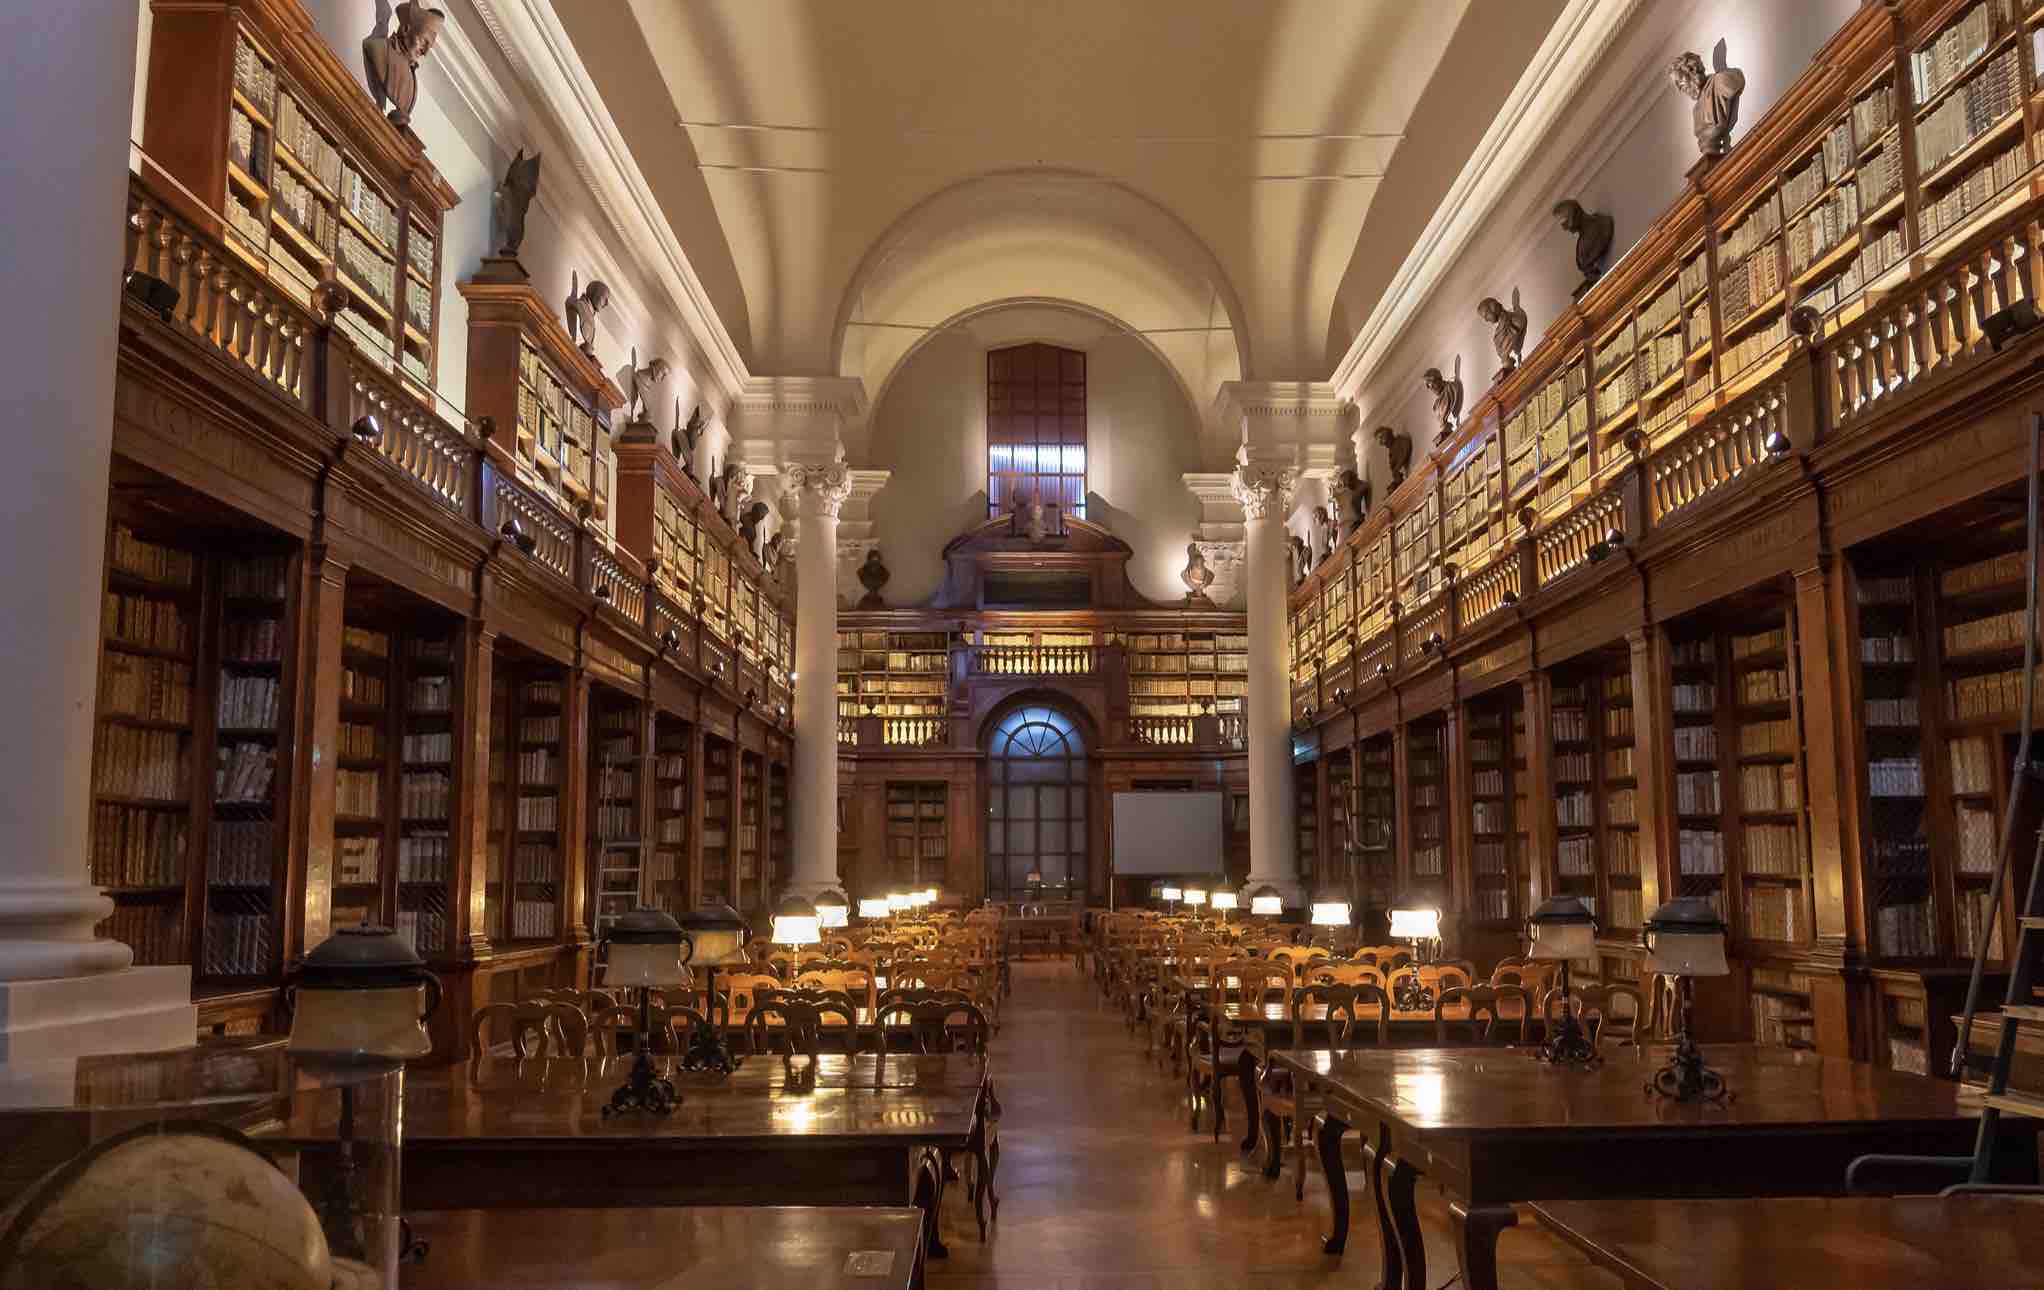 Библиотека Института наук Болонского университета — старейшего университета в Европе и в мире. В его стенах родилась идея о создании единого европейского учебного пространства. Источник фото: Flickr.com<br><br>